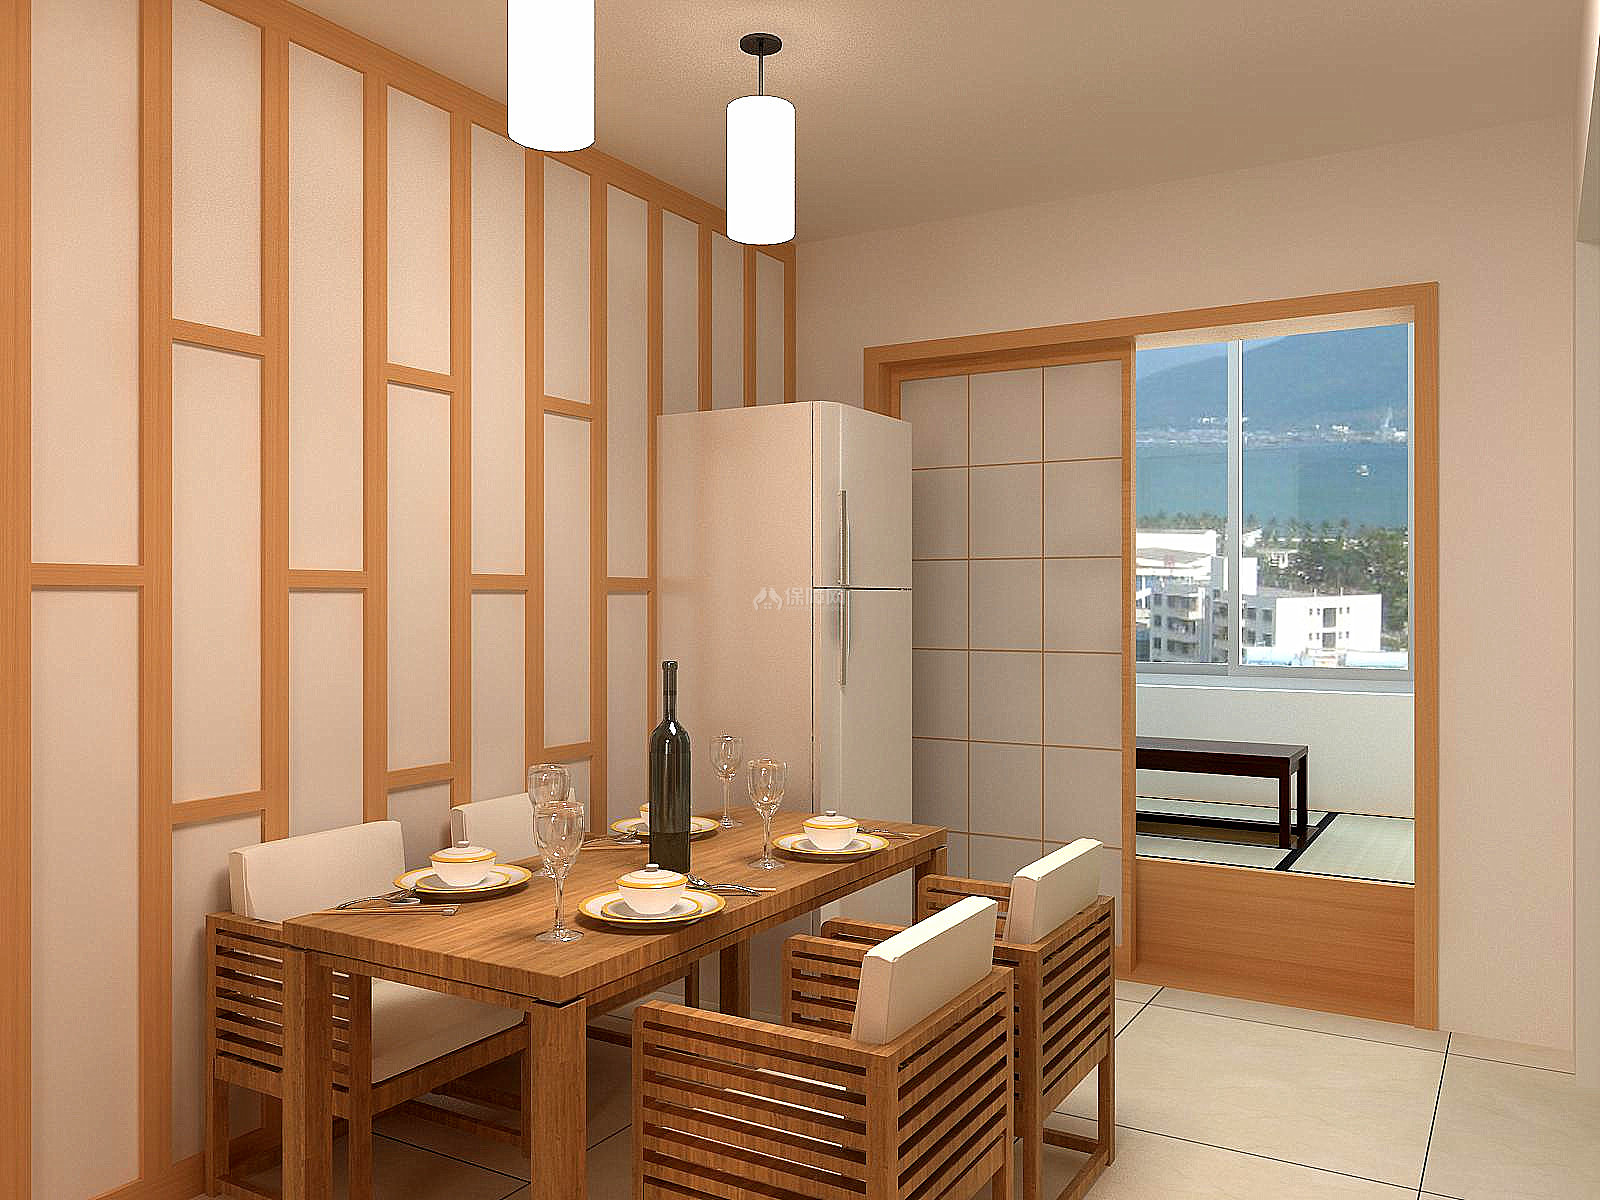 日式餐厅 - 效果图交流区-建E室内设计网